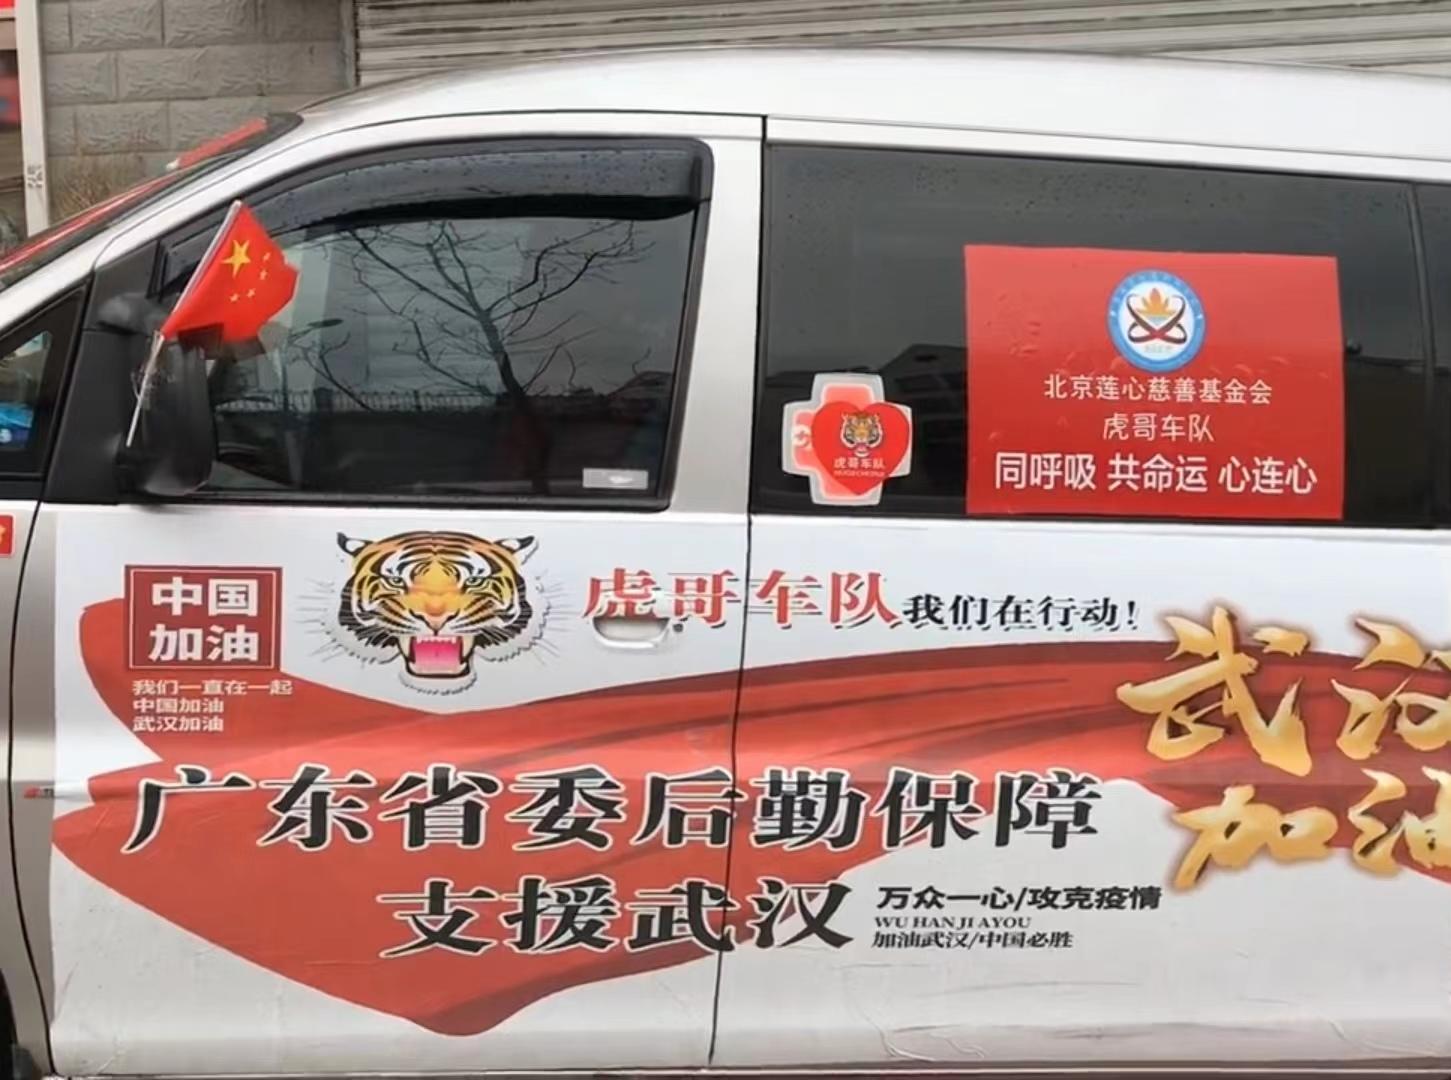 ▲张凯的车上赫然贴着“广东省委后勤保障”